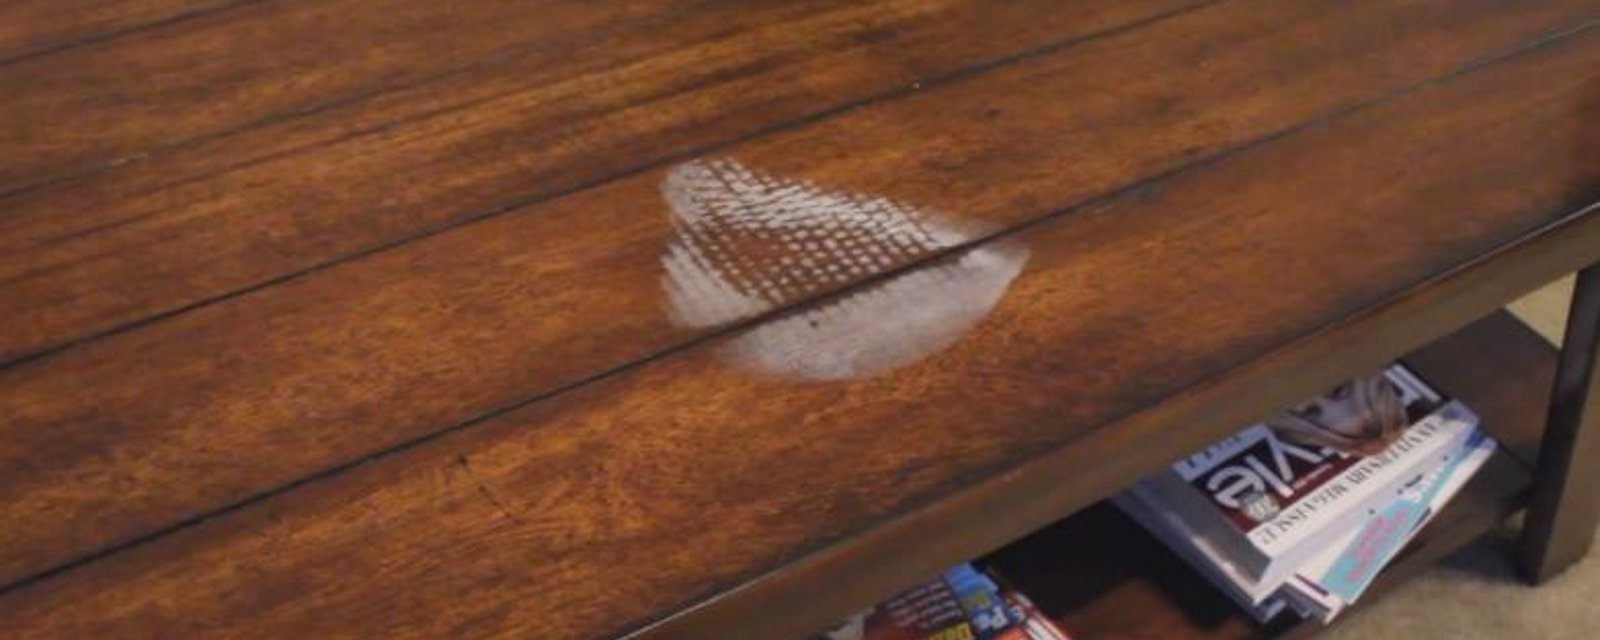 3 astuces formidables pour éliminer les taches d'eau sur vos meubles en bois!